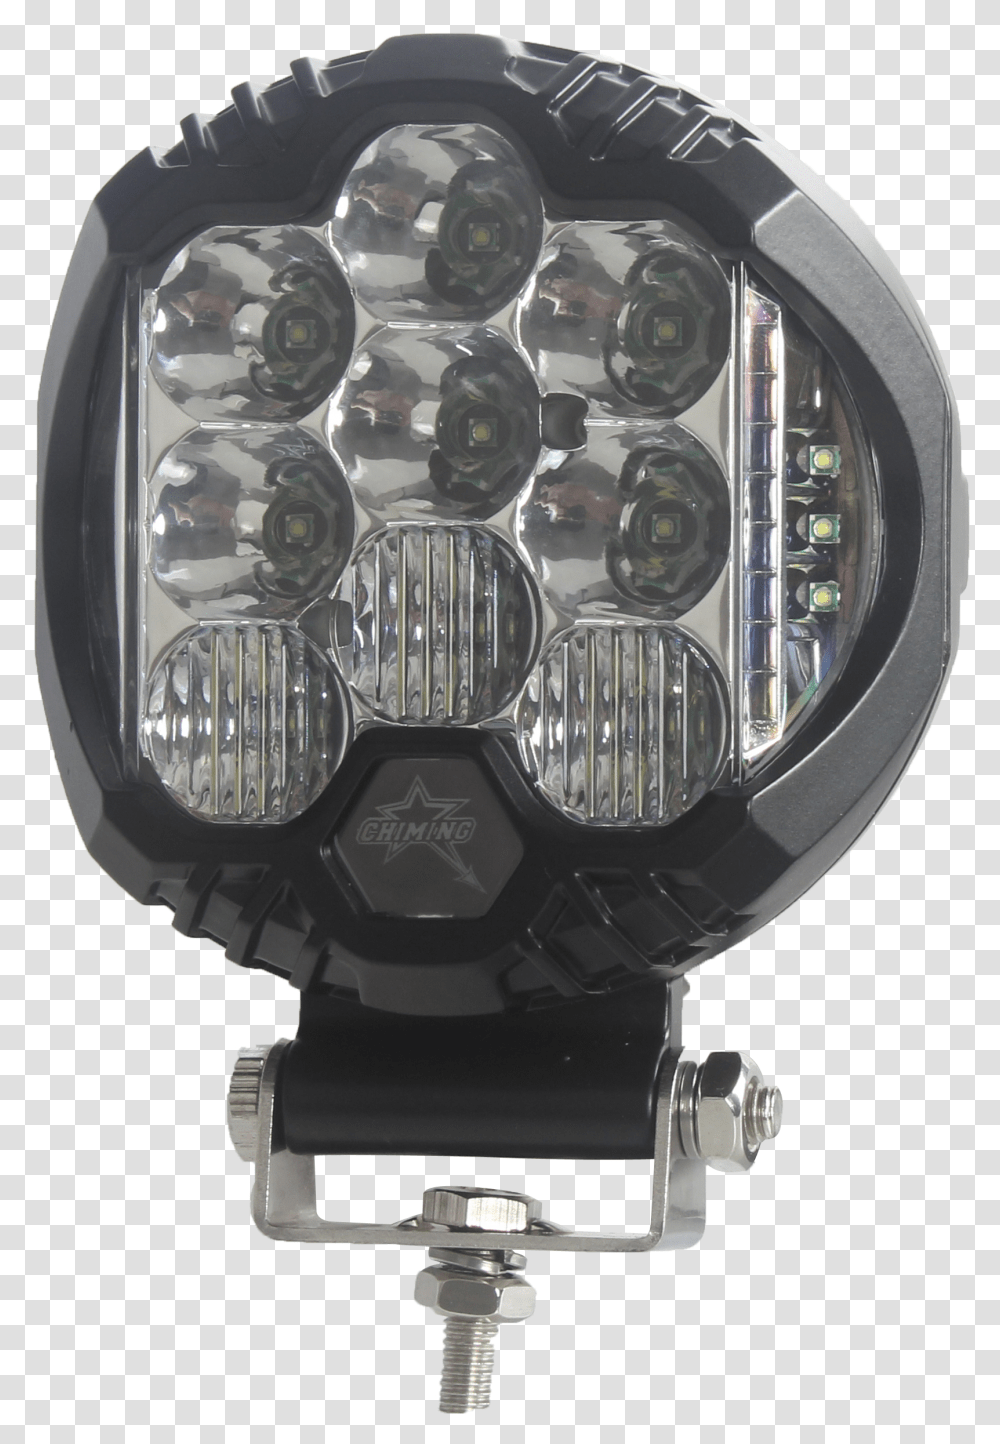 30 Watt Driving Light With Dual Side & Angel Eyes Light, Headlight, Wristwatch Transparent Png